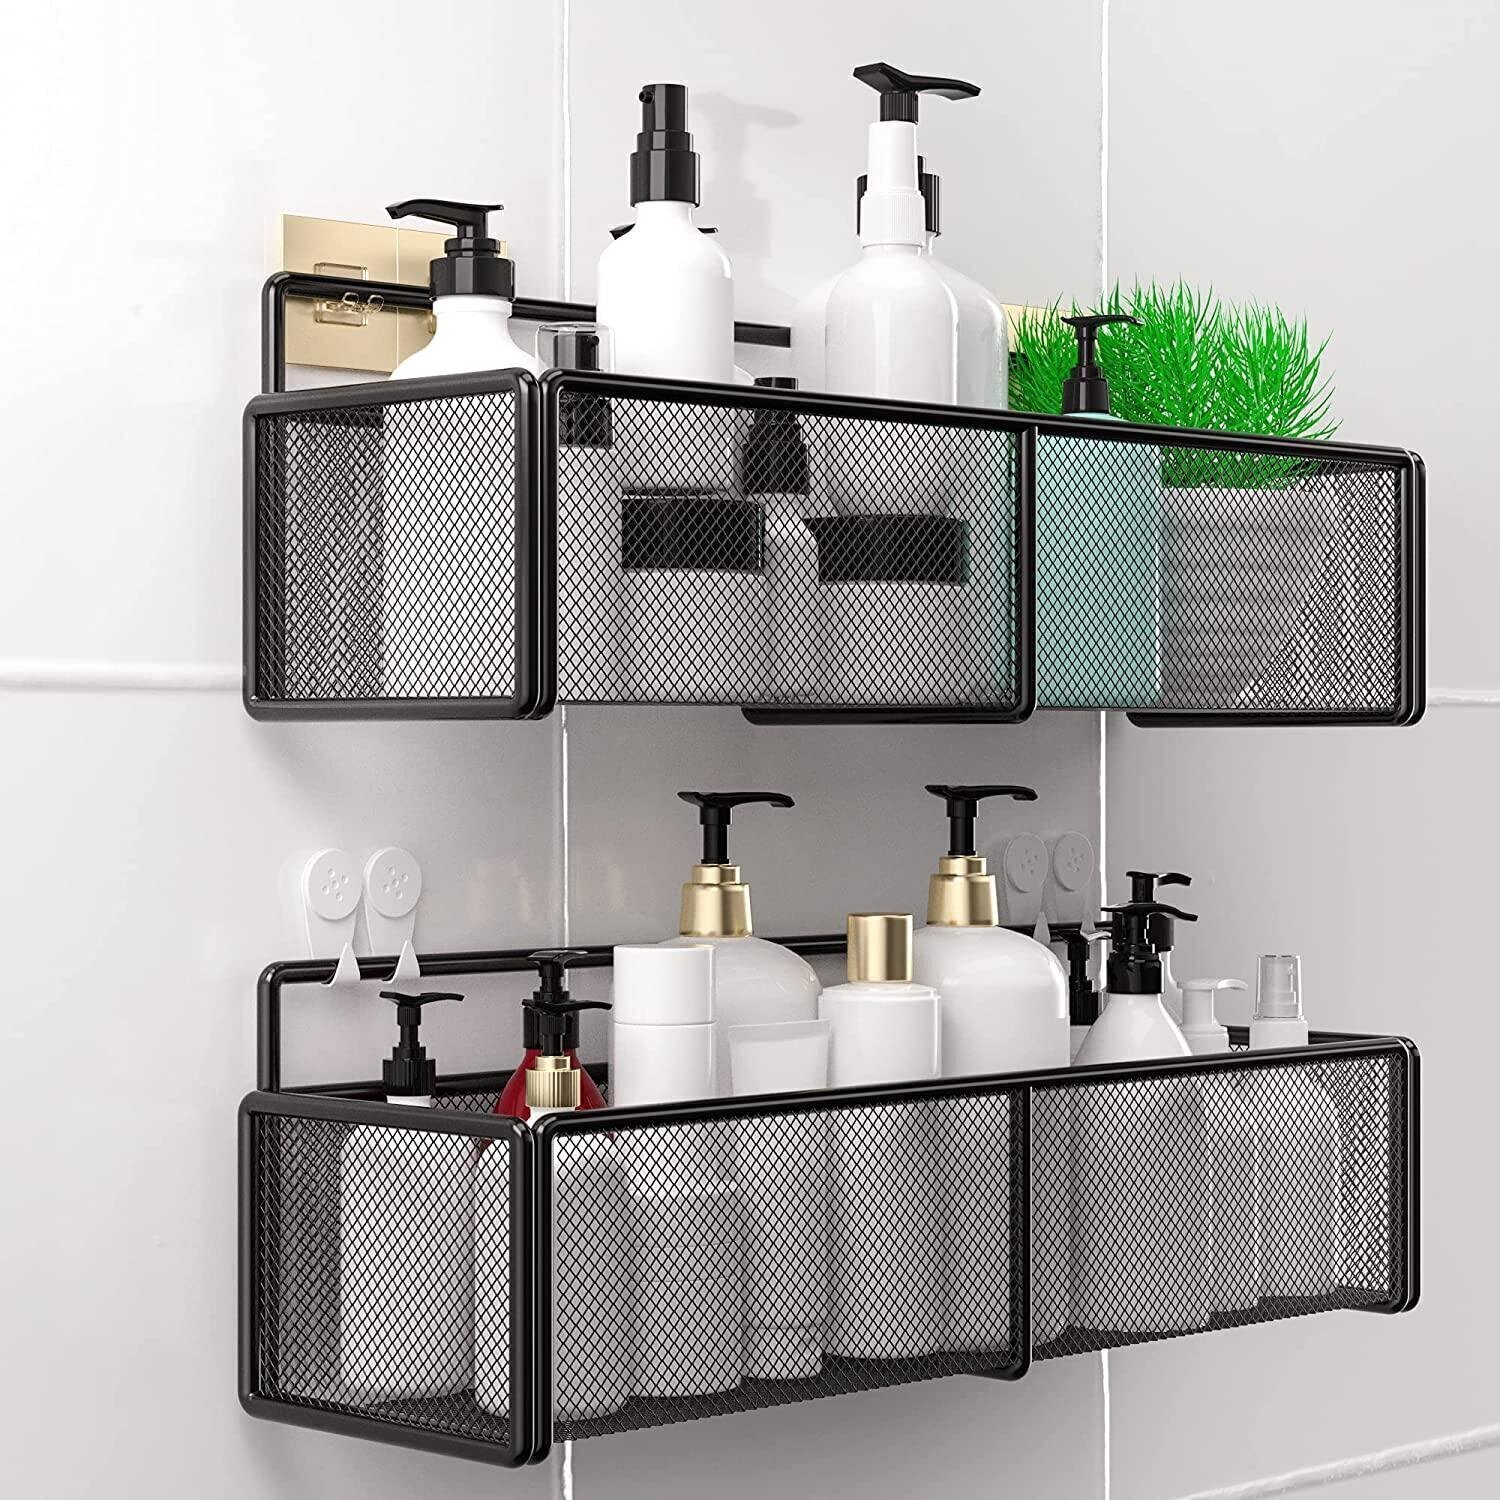 Set of two stylish shower shelves